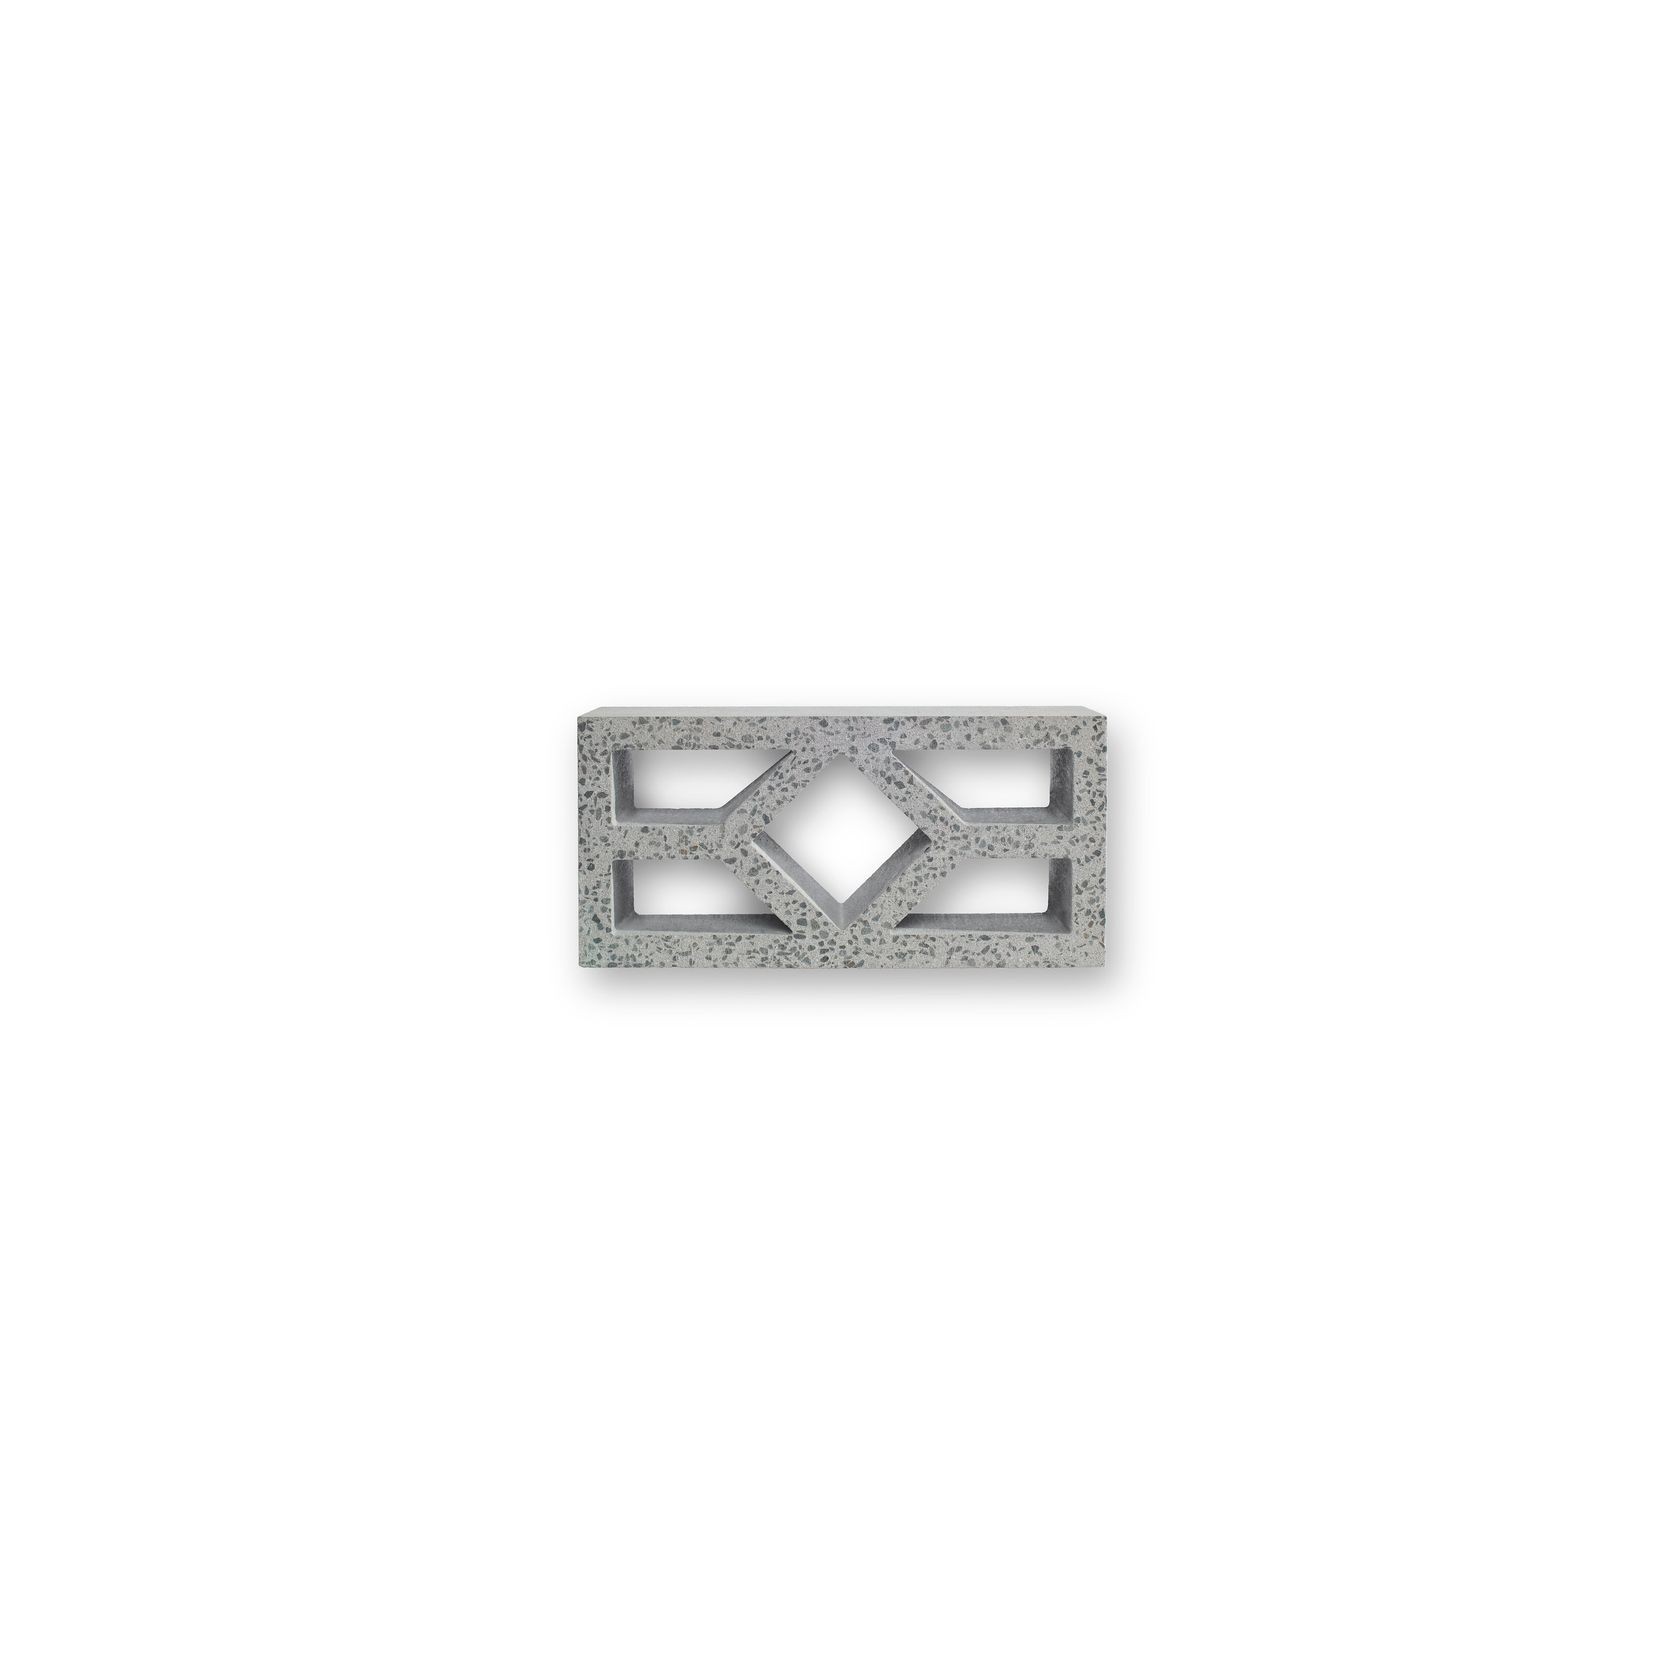 GB Masonry Breeze Blocks | Diamond gallery detail image